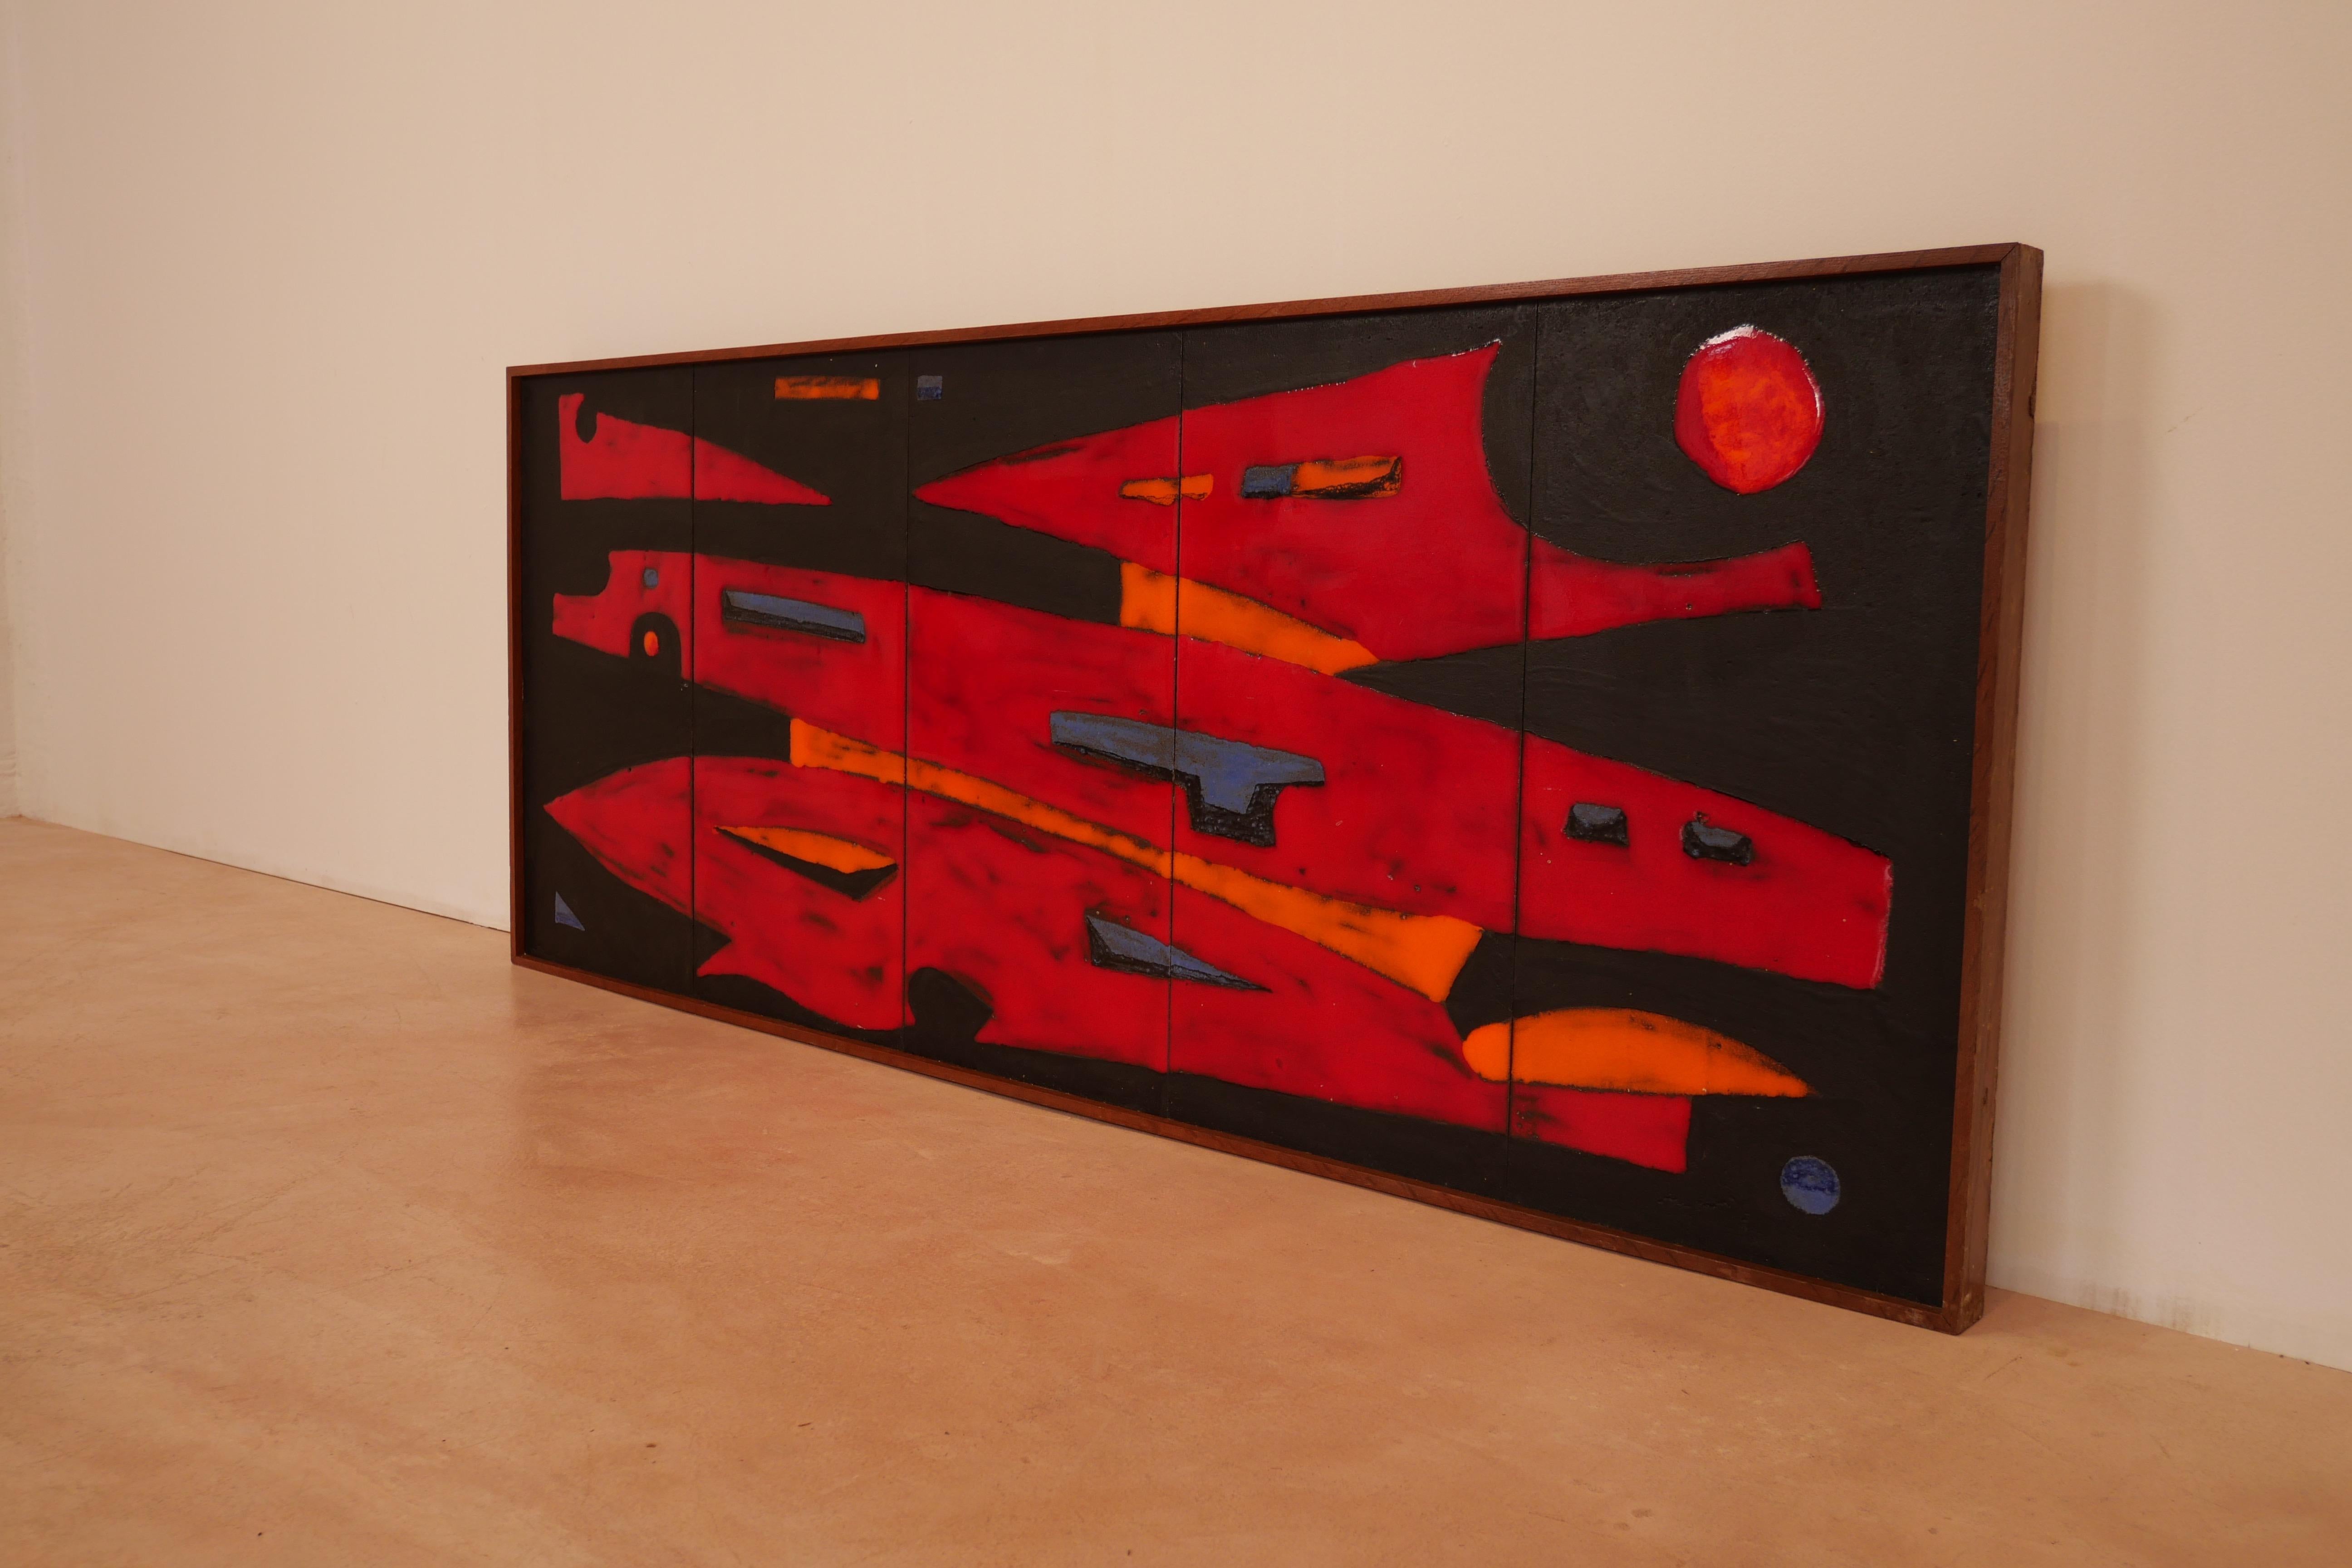 Rare panneau mural des Frères Cloutier, composé de 5 plaques de lave émaillées de rouge et de noir Cloutier, cette représentation abstraite qui peut faire penser à un vaisseau spatial sera du plus bel effet dans votre intérieur. Ce panneau mural est